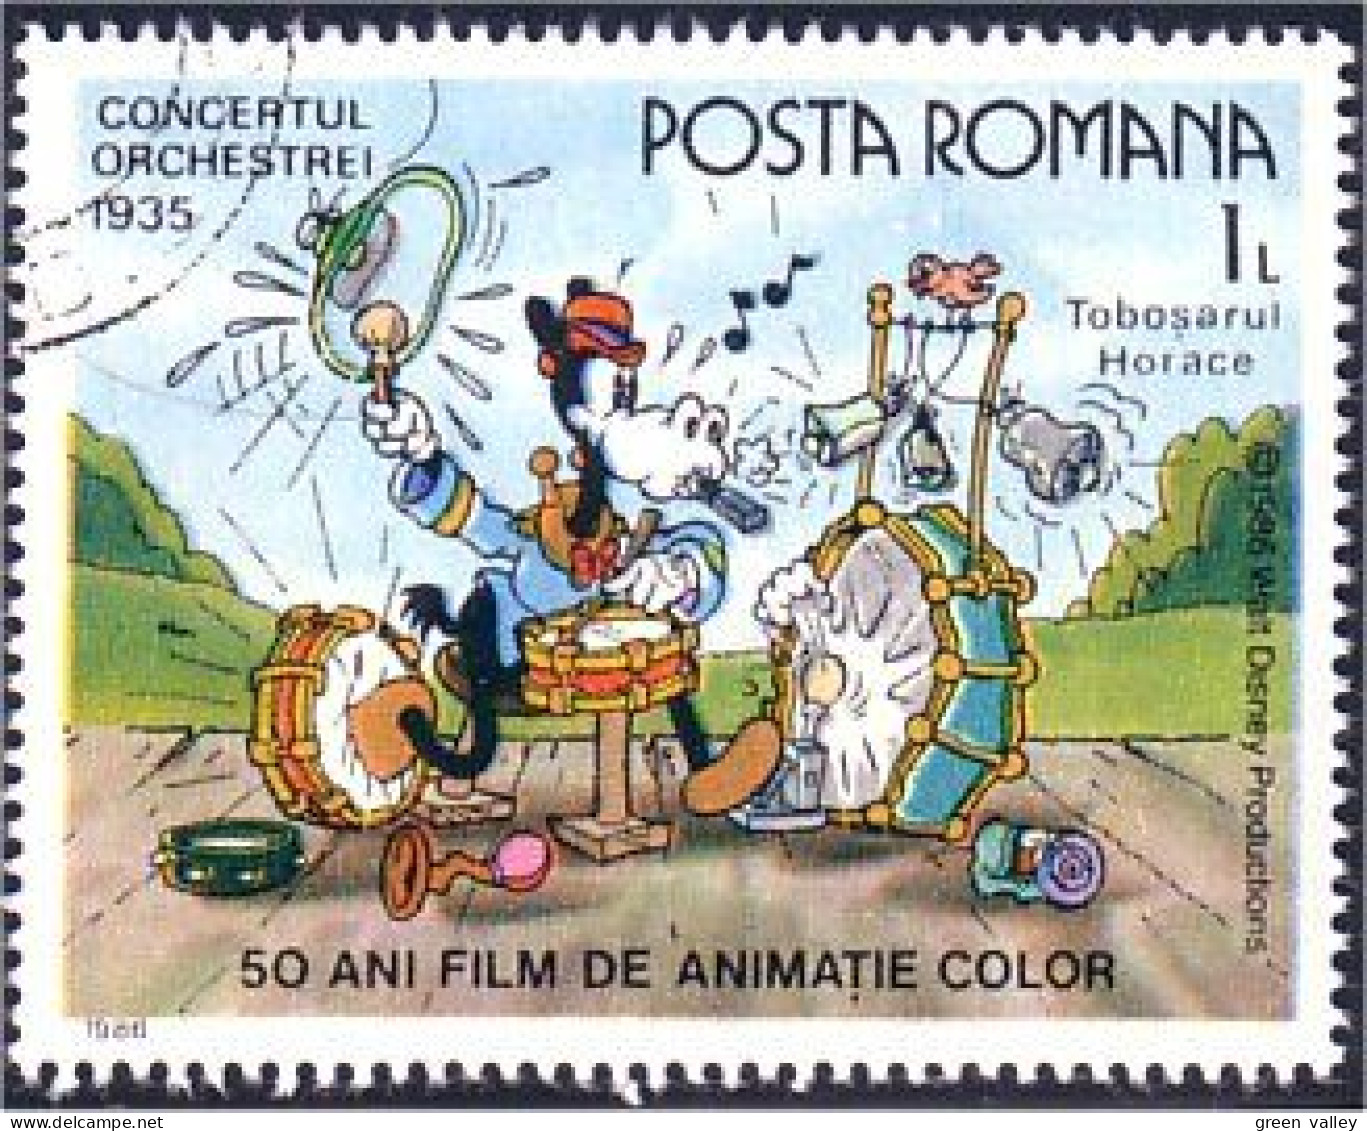 766 Roumanie Disney Horace One Man Band Homme Orchestre (ROU-89) - Musique